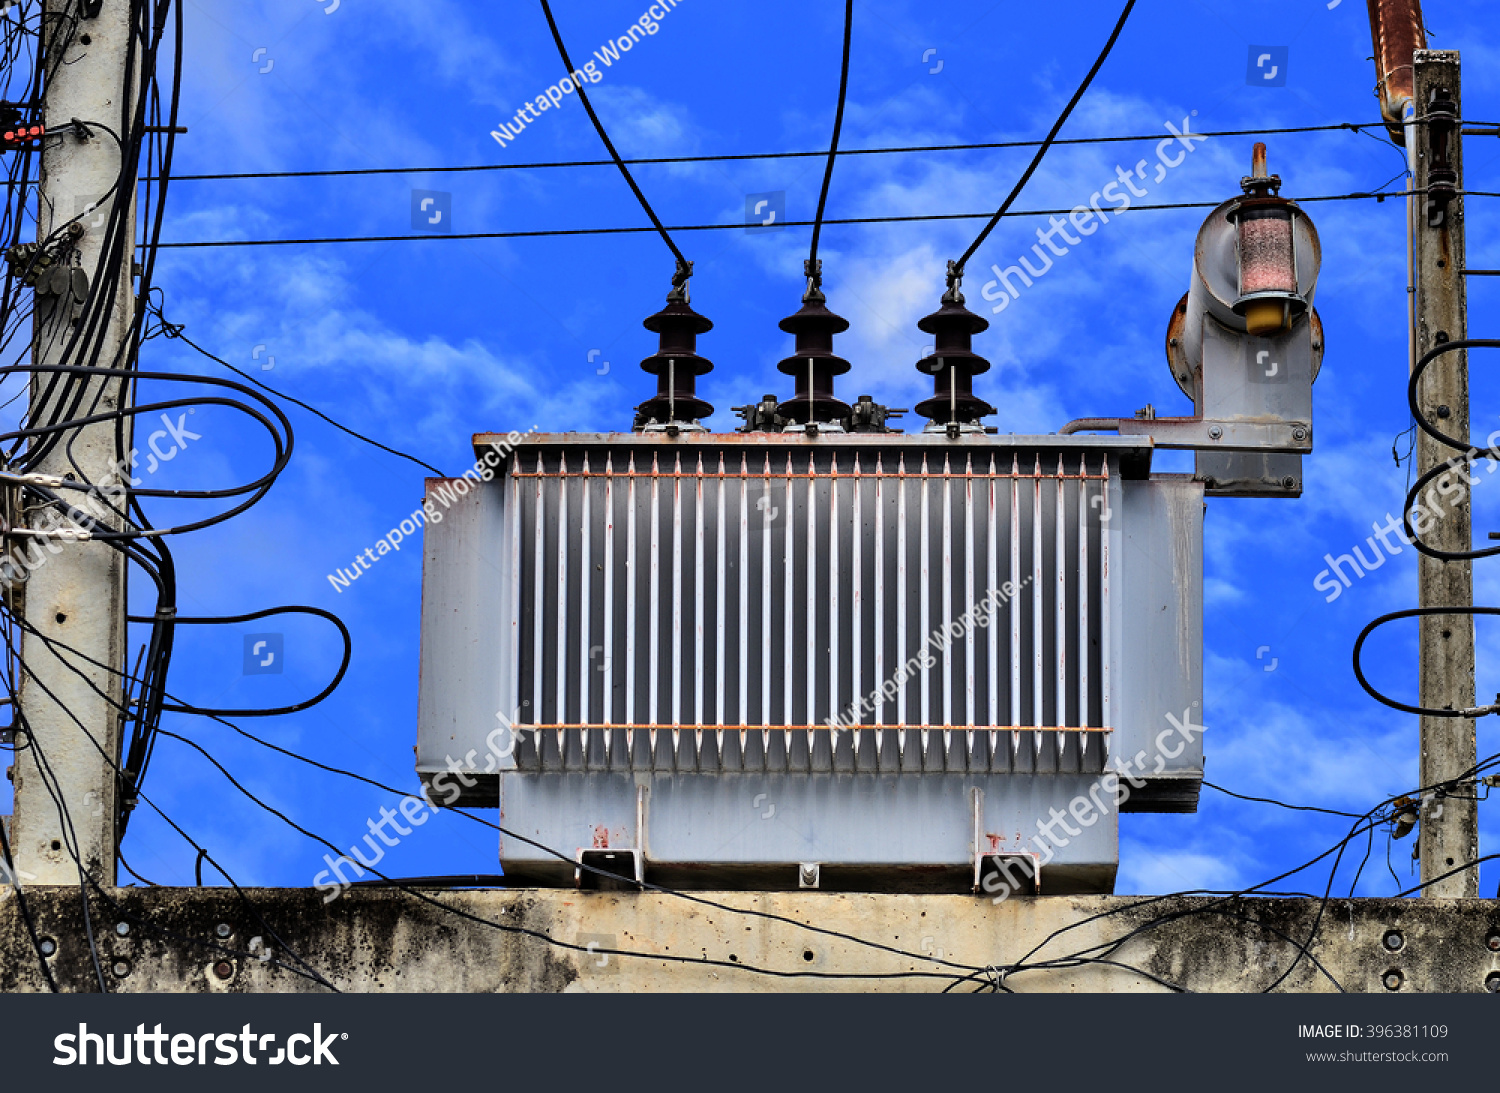 Какие трансформаторы используют вблизи жилых. Высоковольтный трансформатор. Пин трансформатора. Какие трансформаторы используются вблизи жилых домов. Трансформаторы используют около электростанций?.